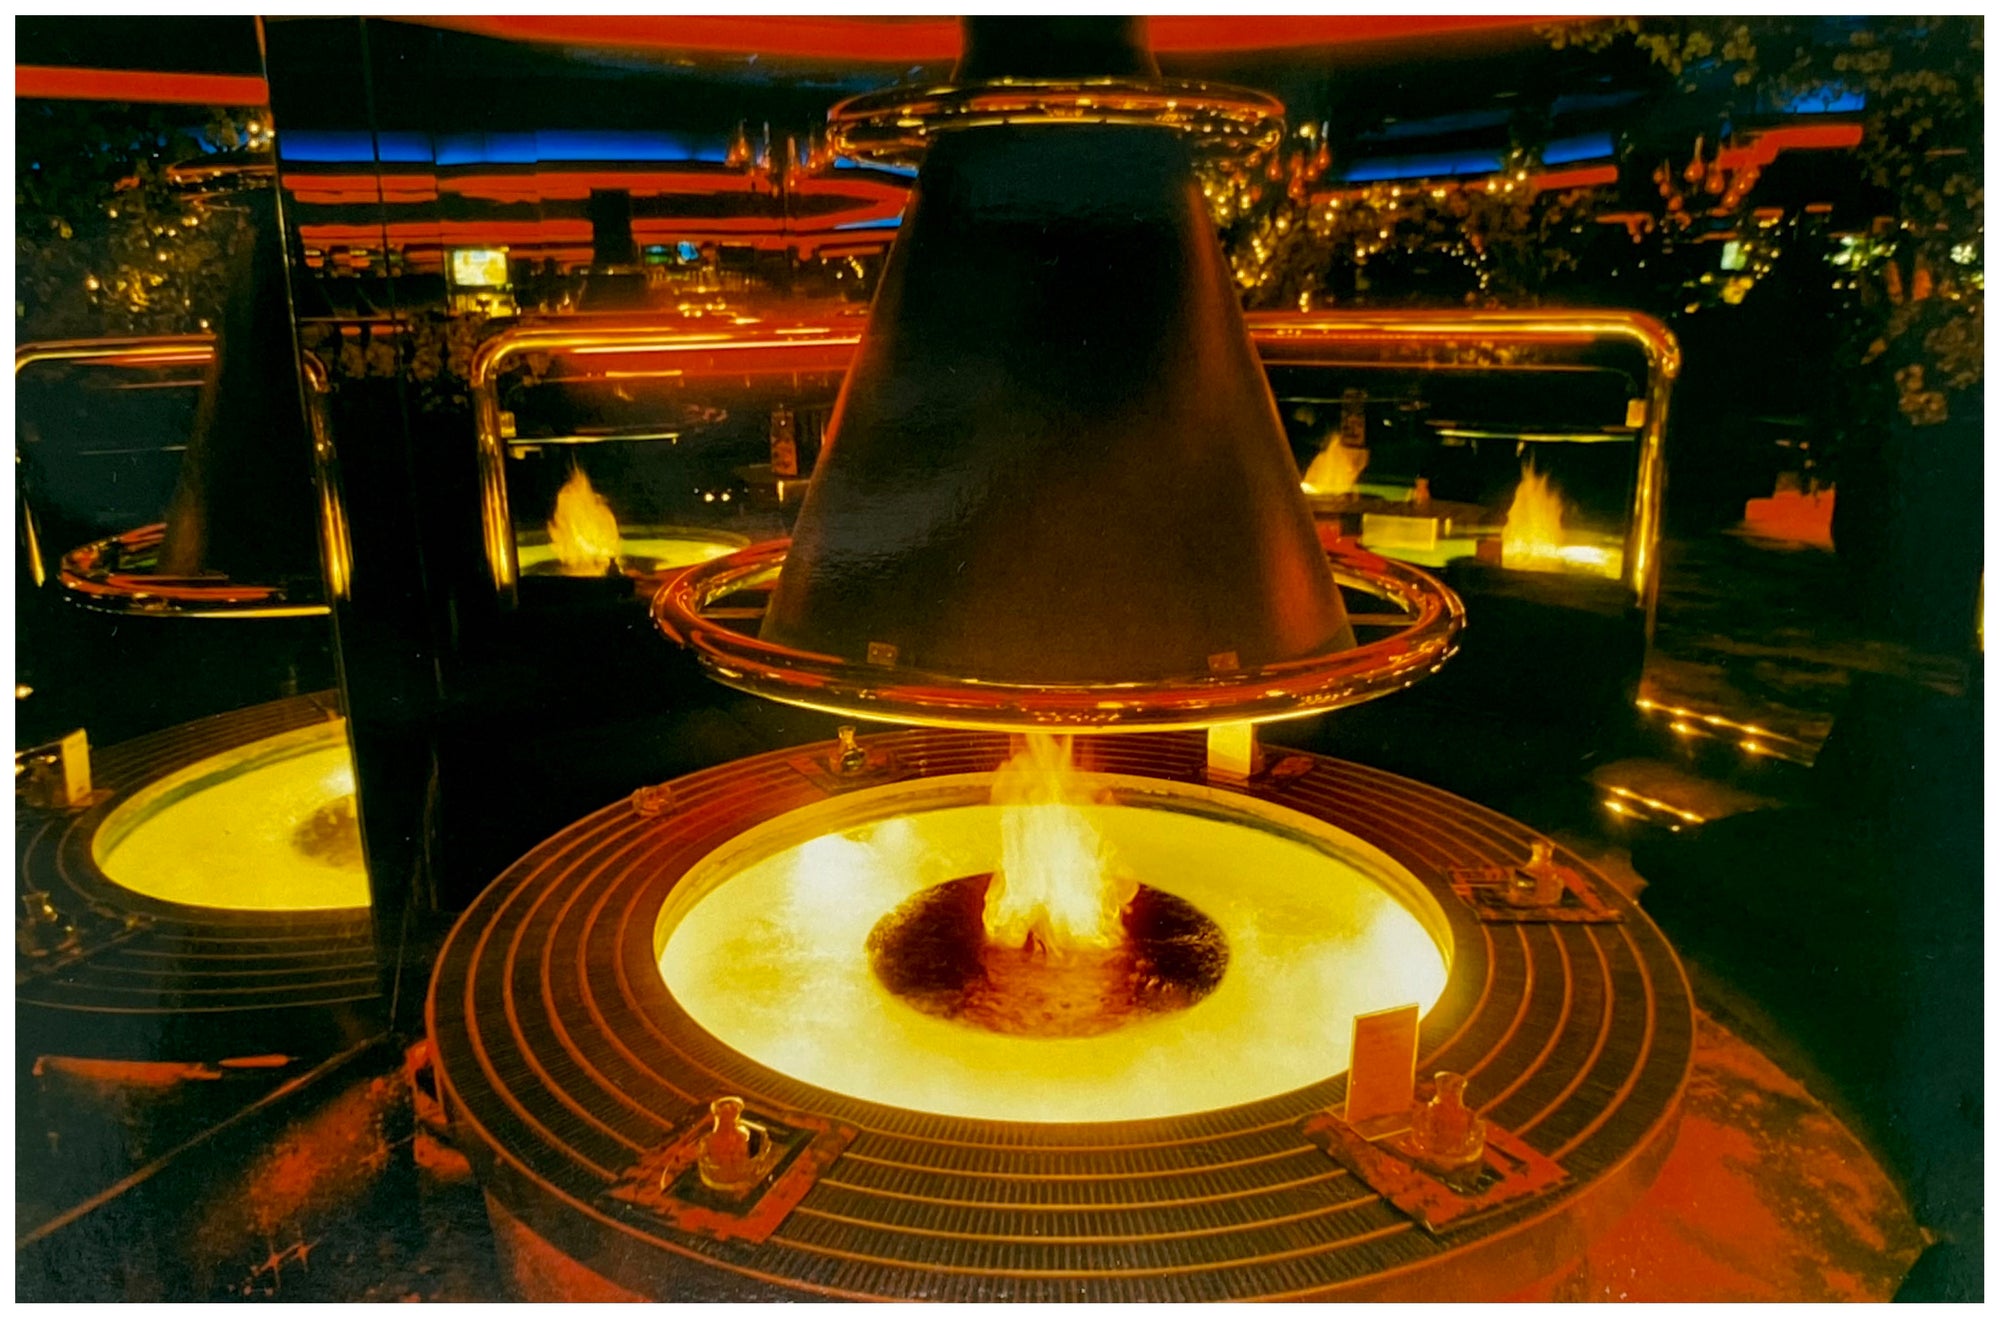 Peppermill Fireside Lounge, Las Vegas, Nevada, 2001